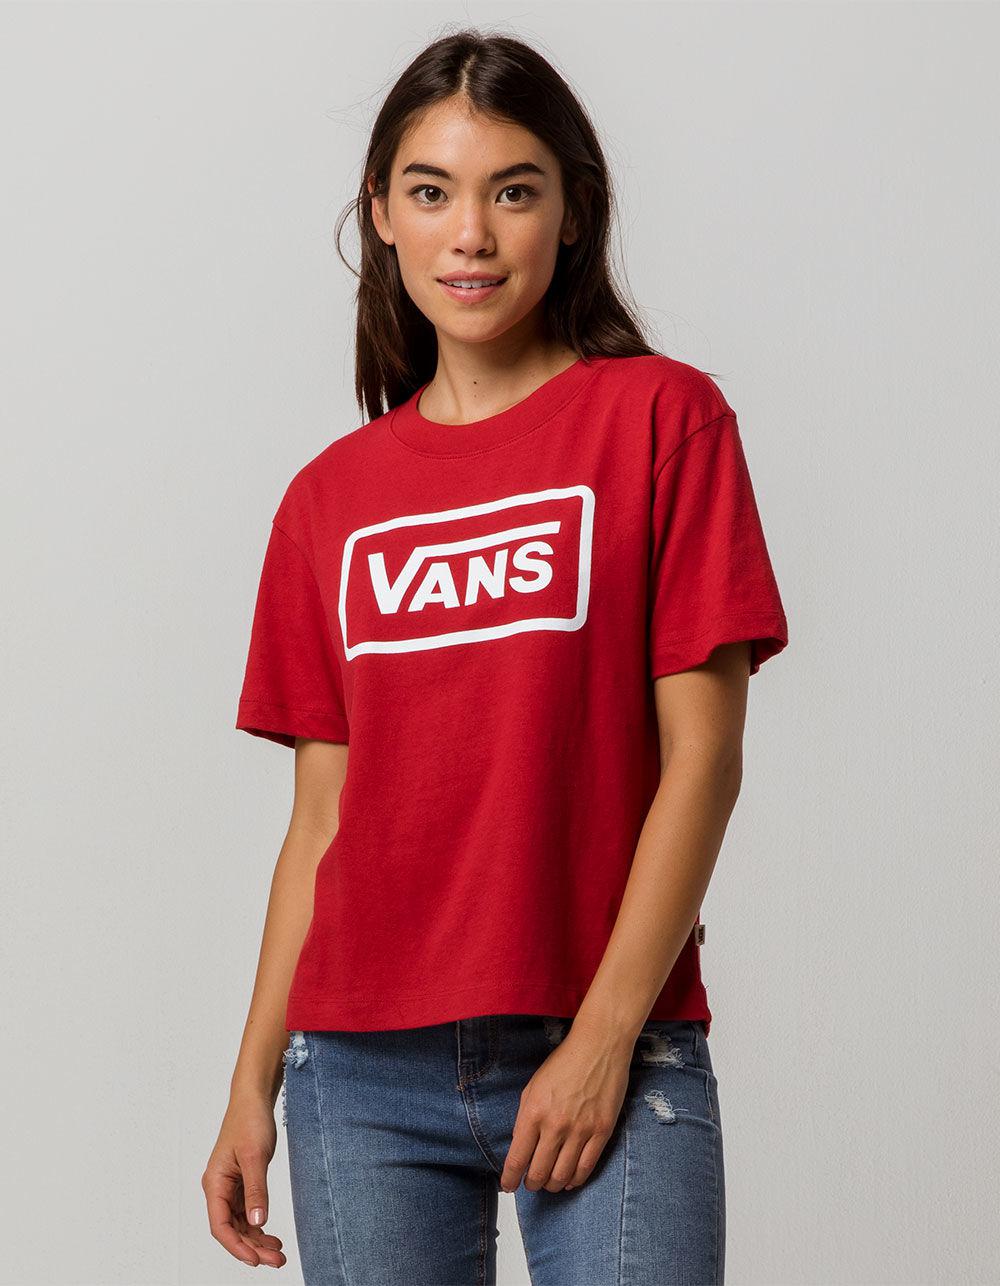 vans red shirt womens